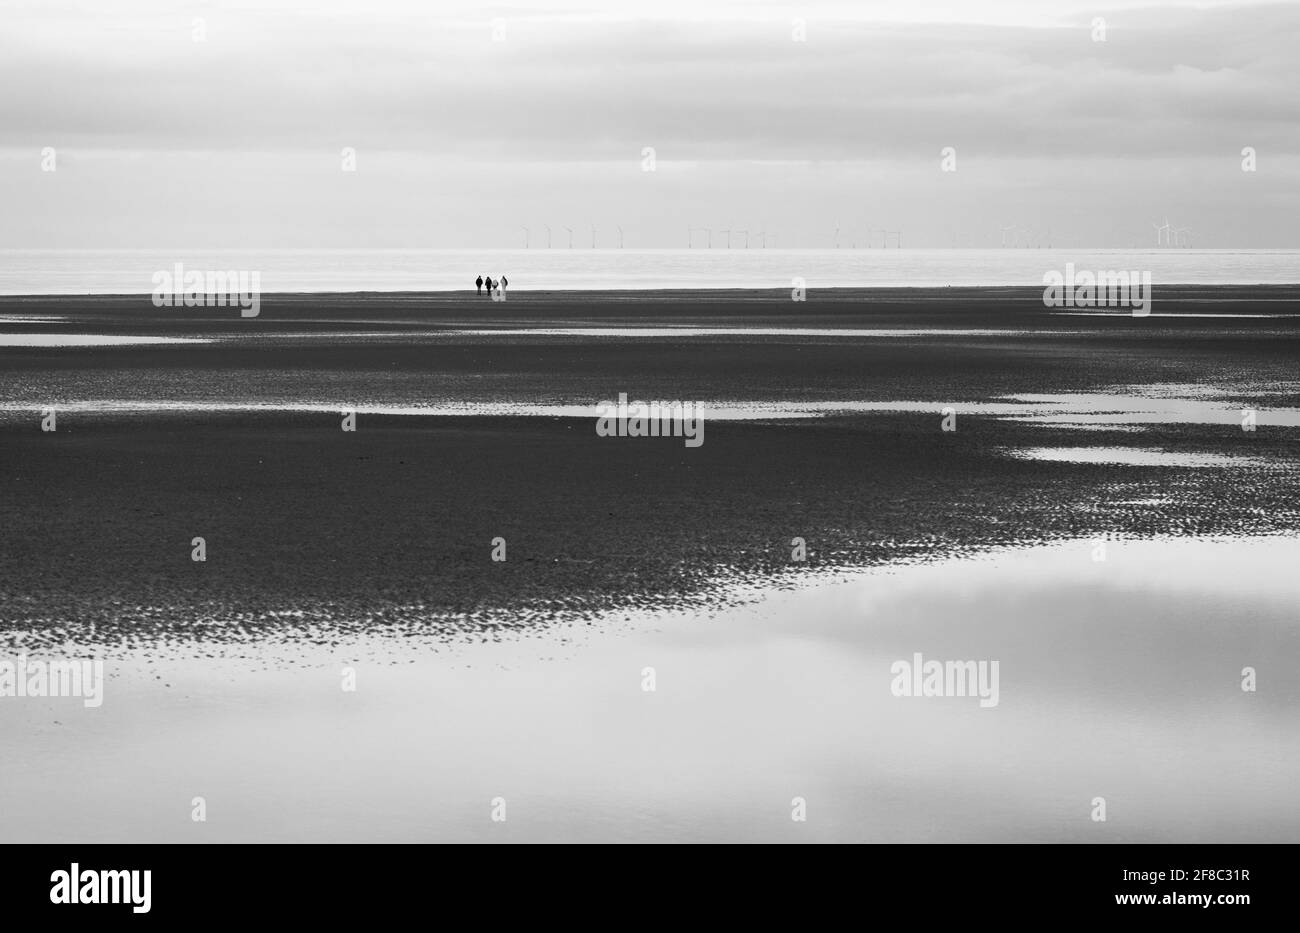 Groupe de quatre personnes au loin sur la plage à Holme-Next-the-Sea, Norfolk, Angleterre, Royaume-Uni. Banque D'Images